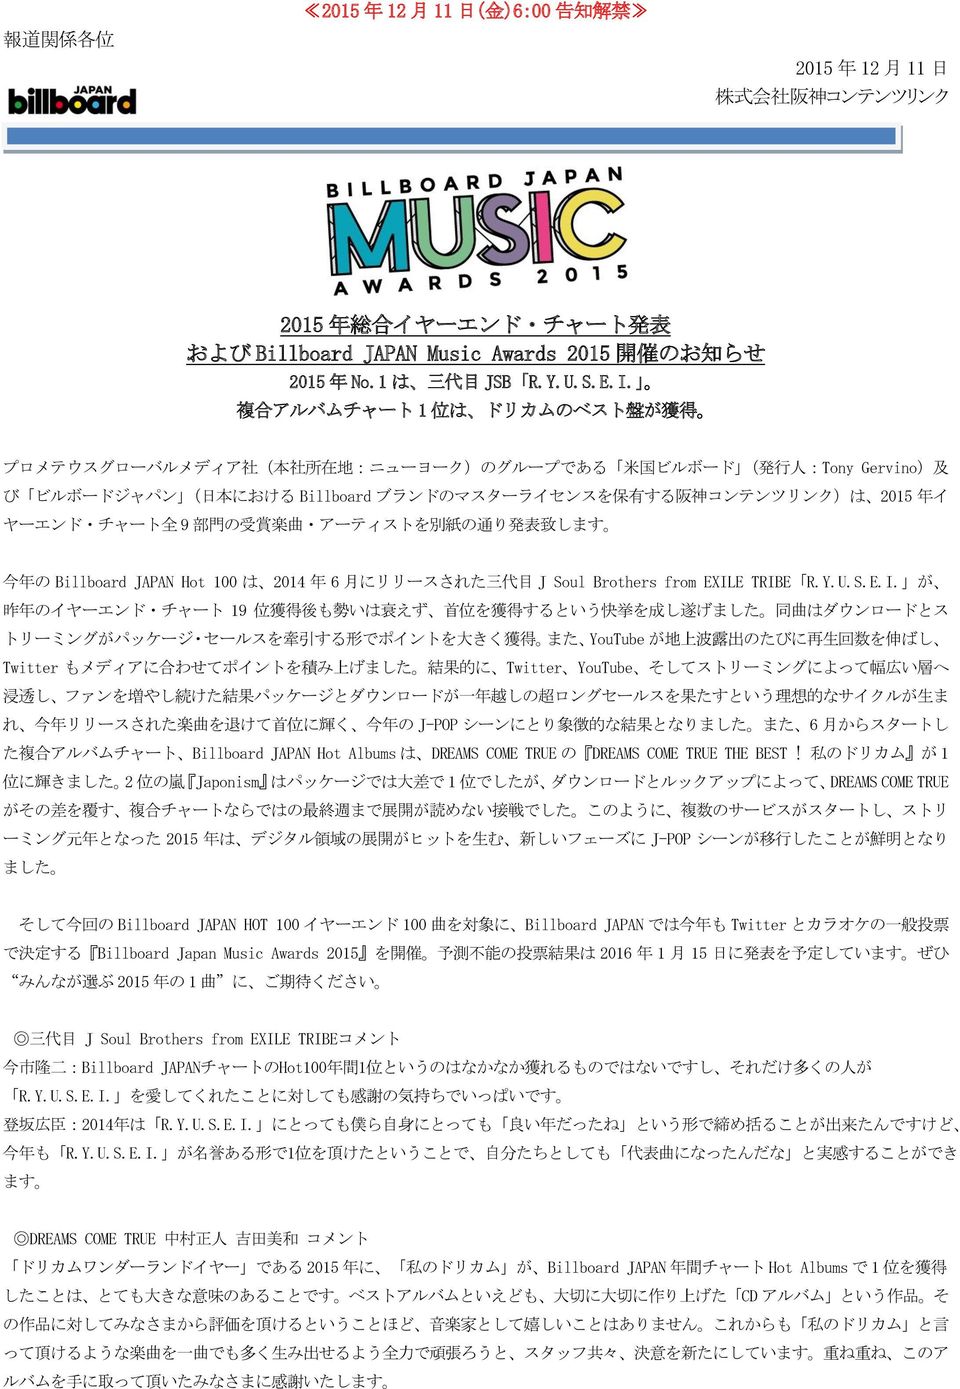 ヤーエンド チャート 全 9 部 門 の 受 賞 楽 曲 アーティストを 別 紙 の 通 り 発 表 致 します 今 年 の Billboard JAPAN Hot 100 は 2014 年 6 月 にリリースされた 三 代 目 J Soul Brothers from EXIL